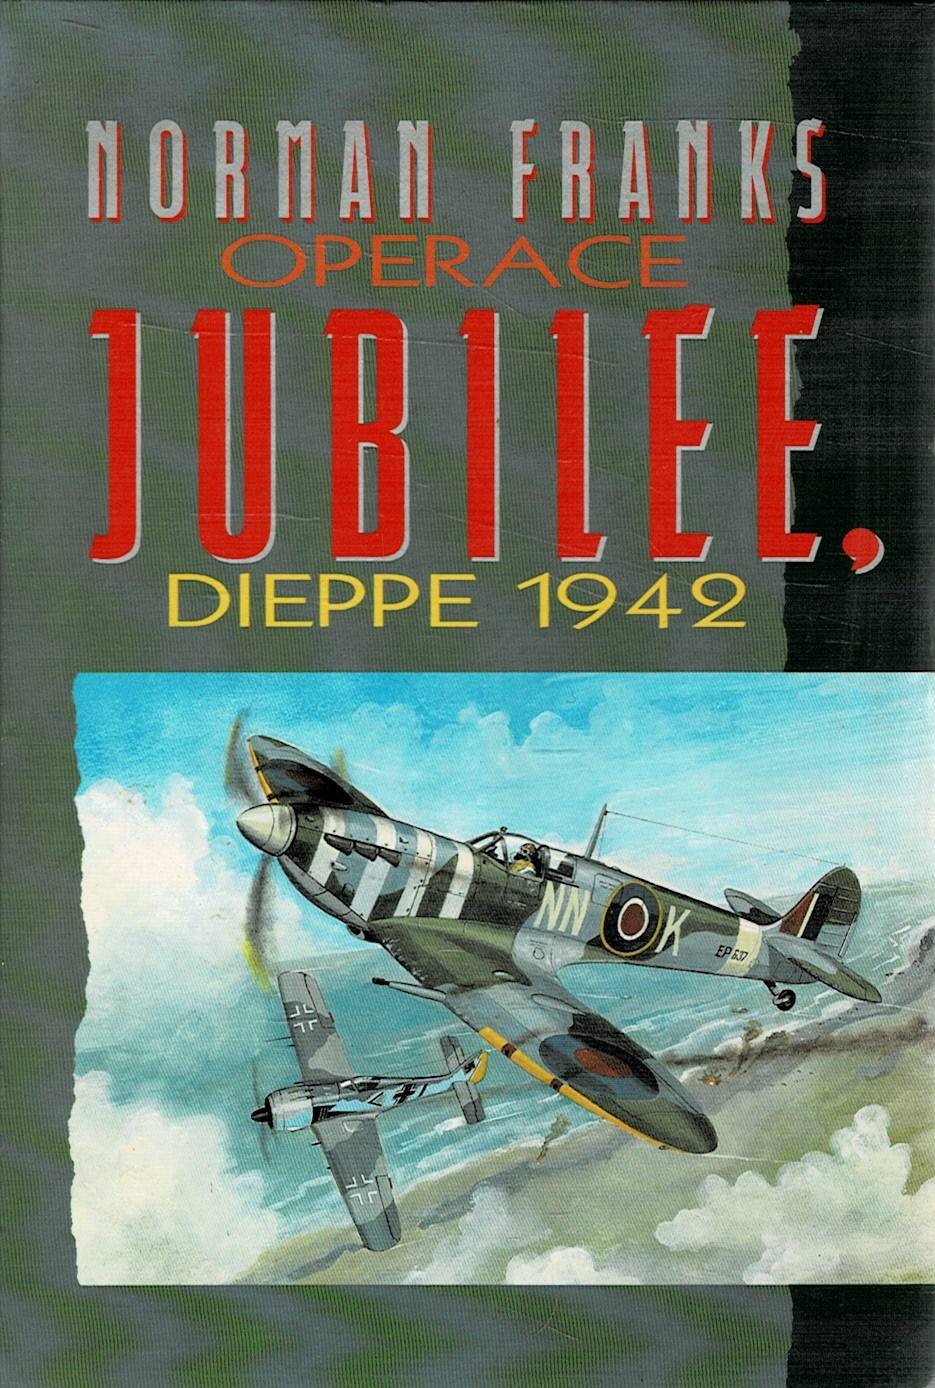 Franks, Norman: Operace Jubilee - Dieppe 1942